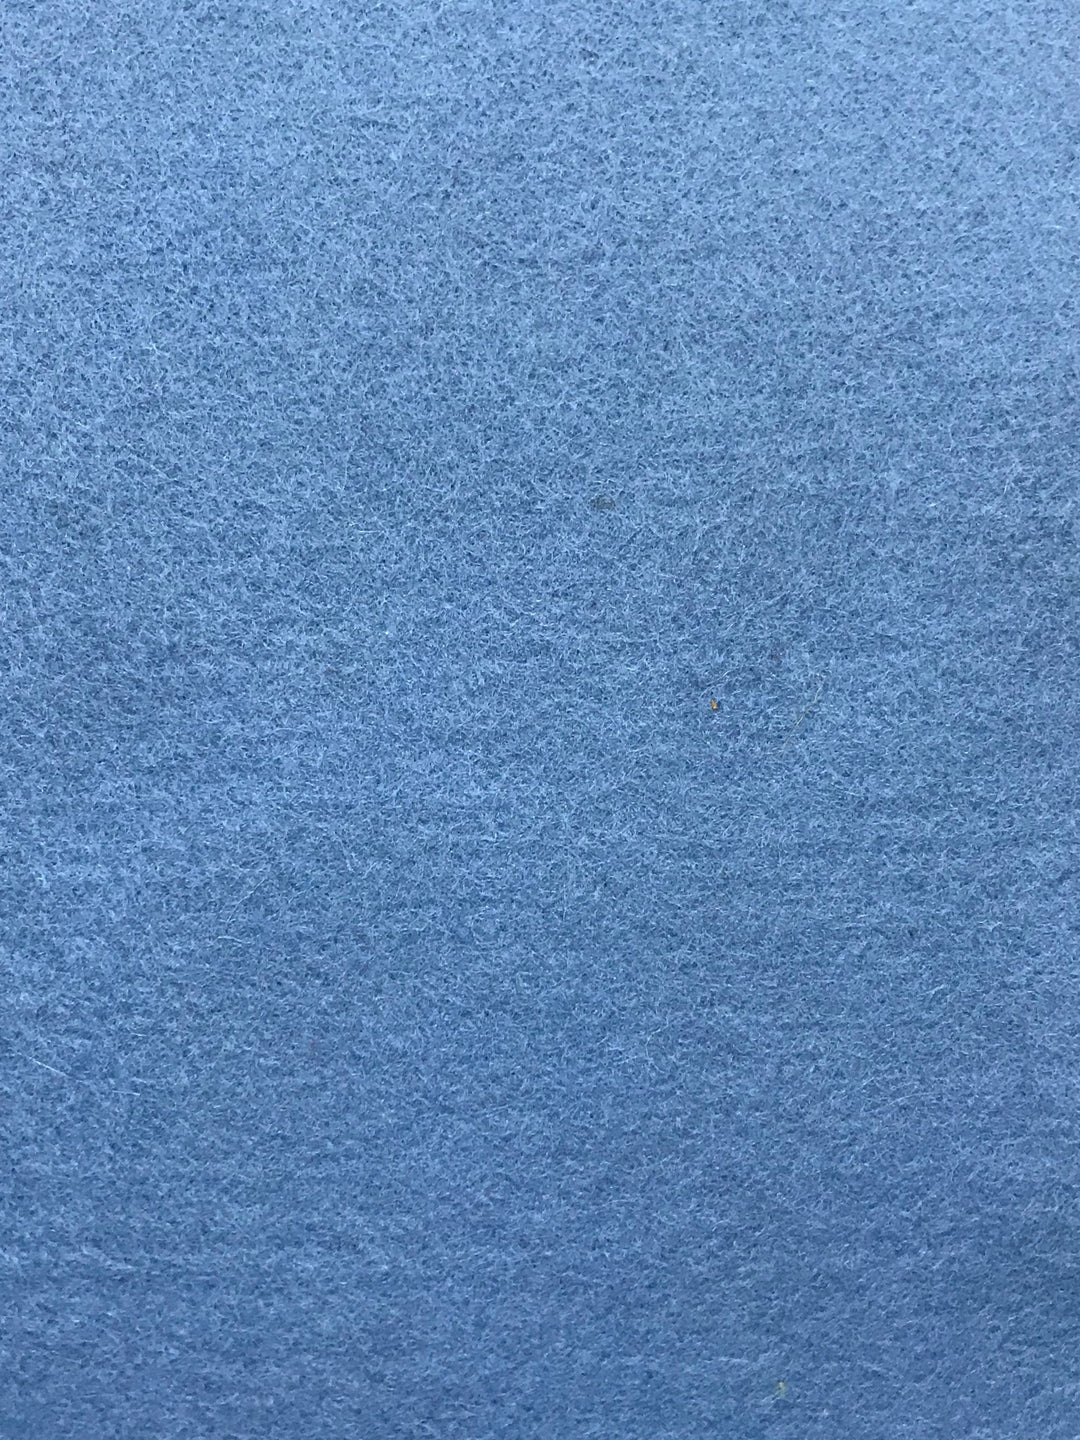 Feutre de laine mérinos bleu Caroline de 1 mm, feuille A4 8 x 11" - N° 58